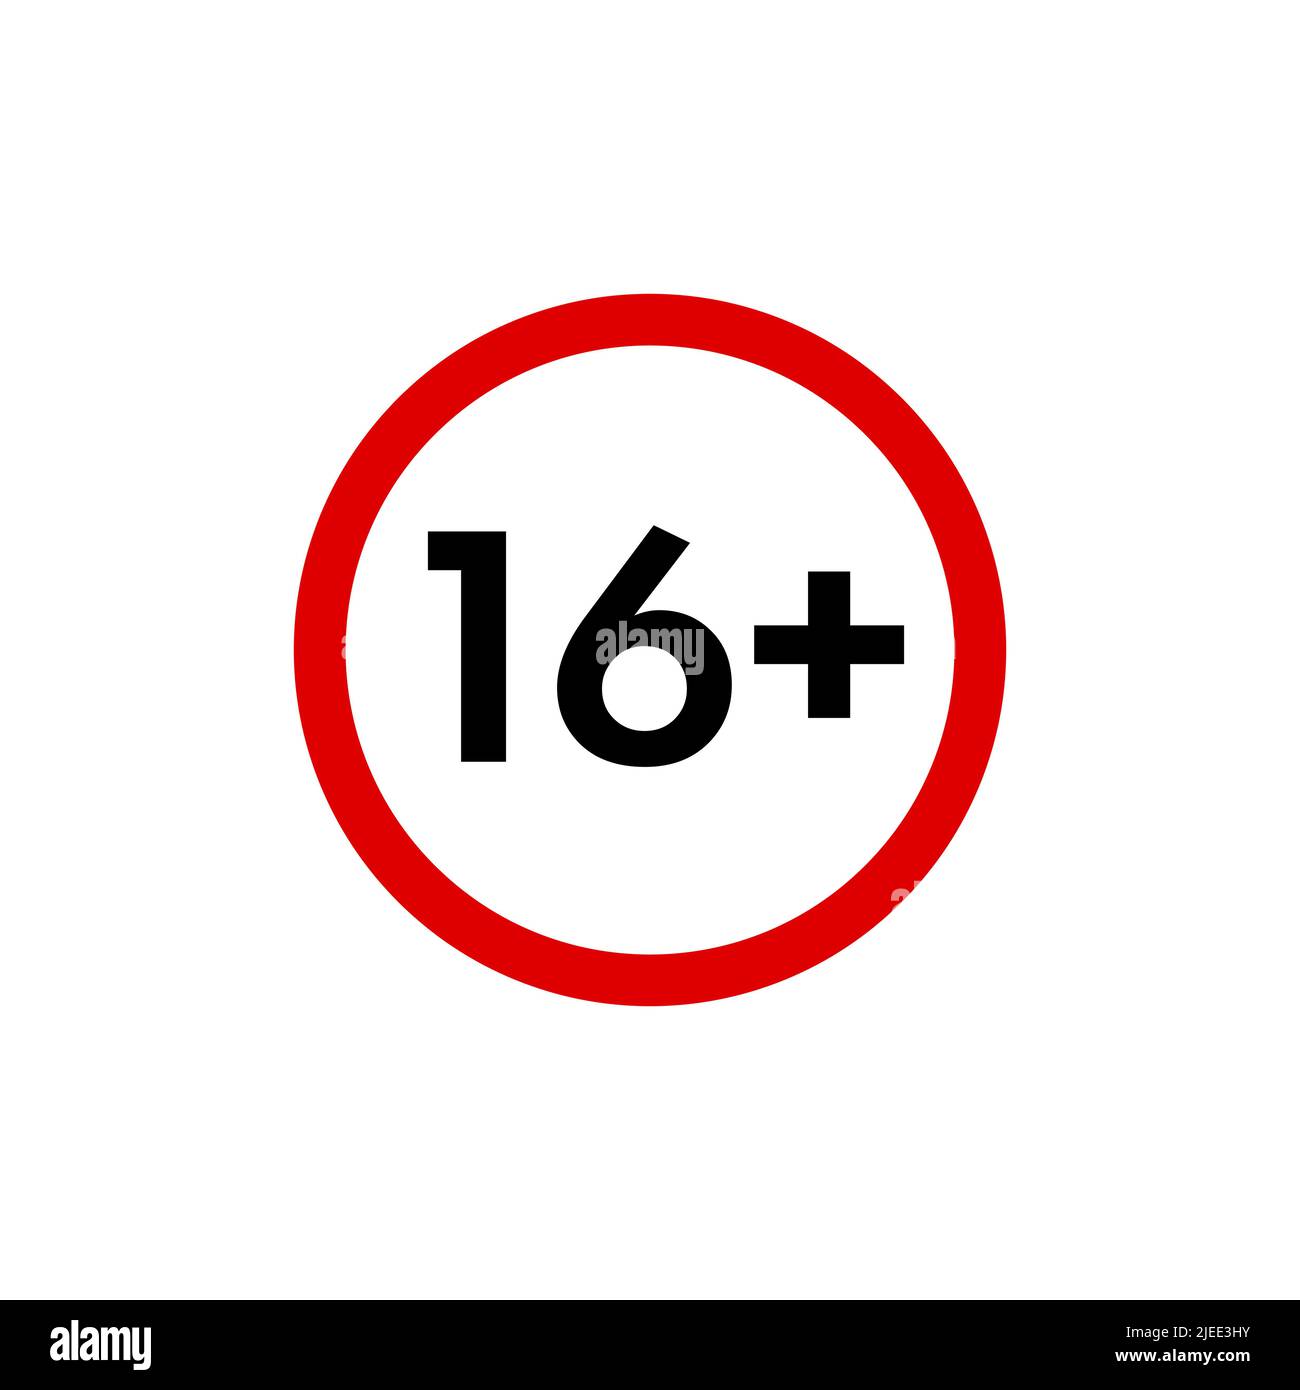 Icône seize plus, signe d'interdiction de moins de 16 ans, symbole de restriction d'âge isolé sur blanc. Illustration vectorielle. Illustration de Vecteur